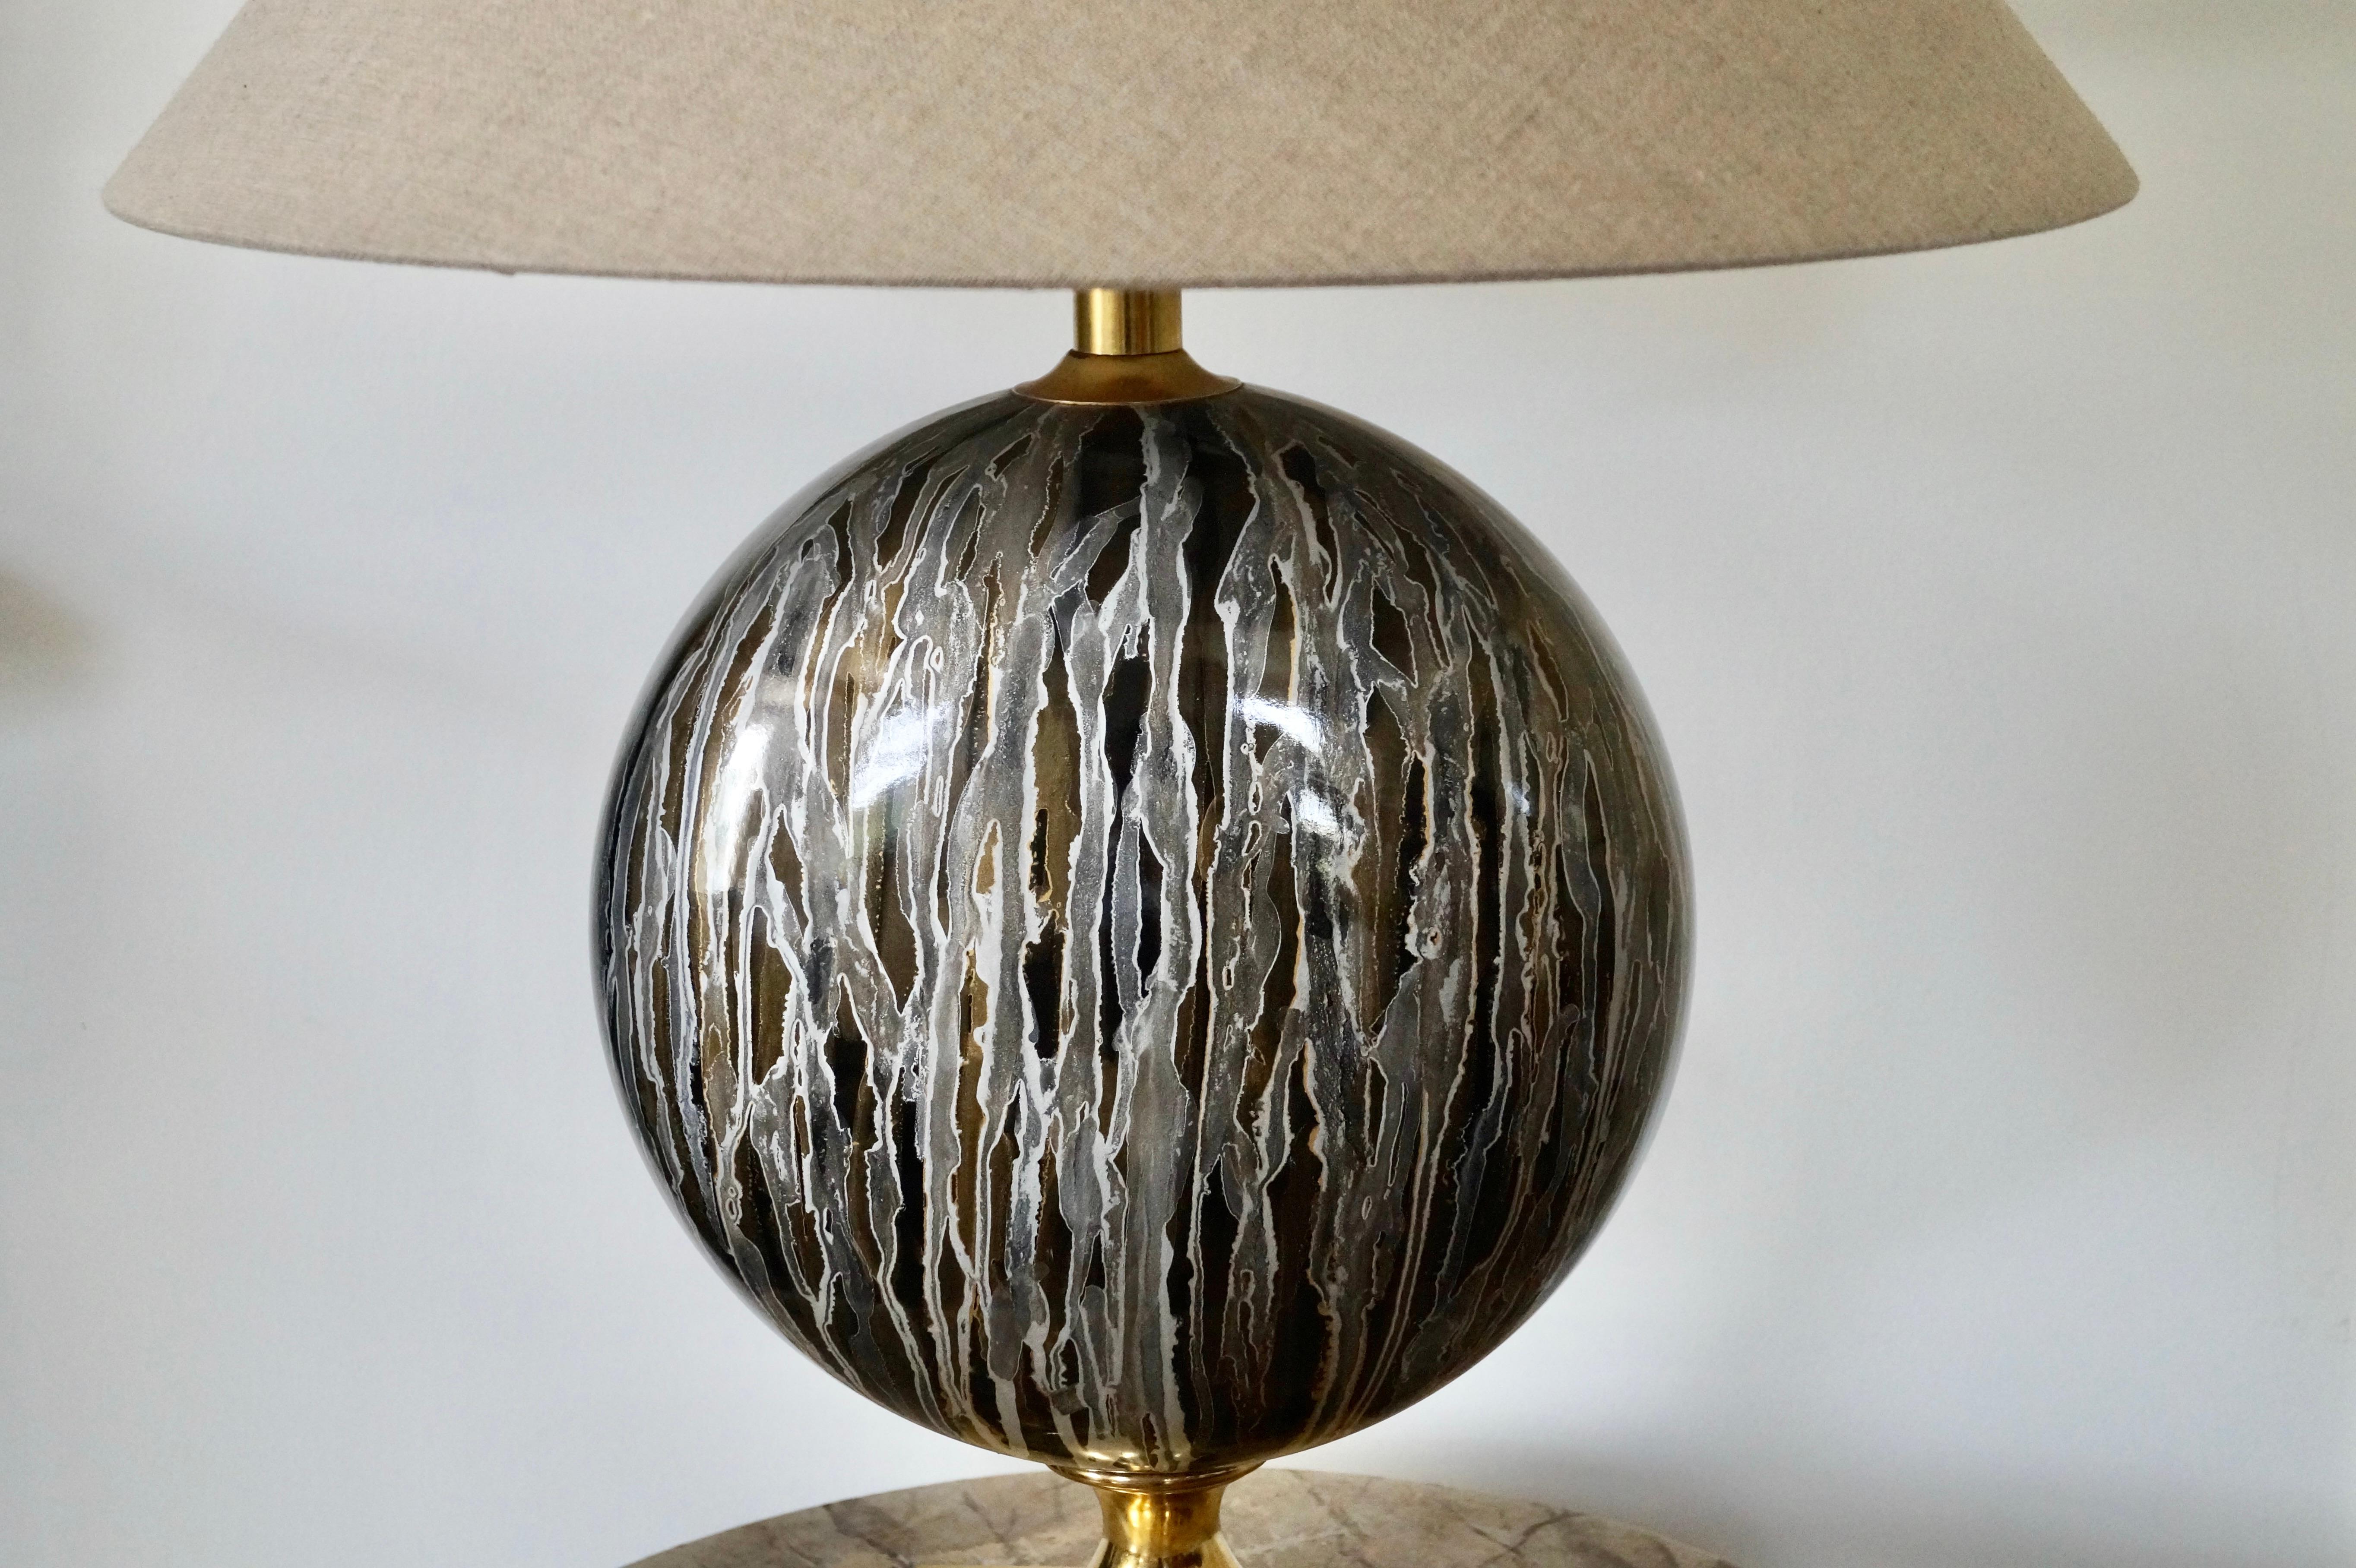 Rare et magnifique lampe de table en laiton et céramique.
Design/One en Italie dans les années 1970
Designobject et peut constituer un véritable point d'orgue dans votre intérieur.